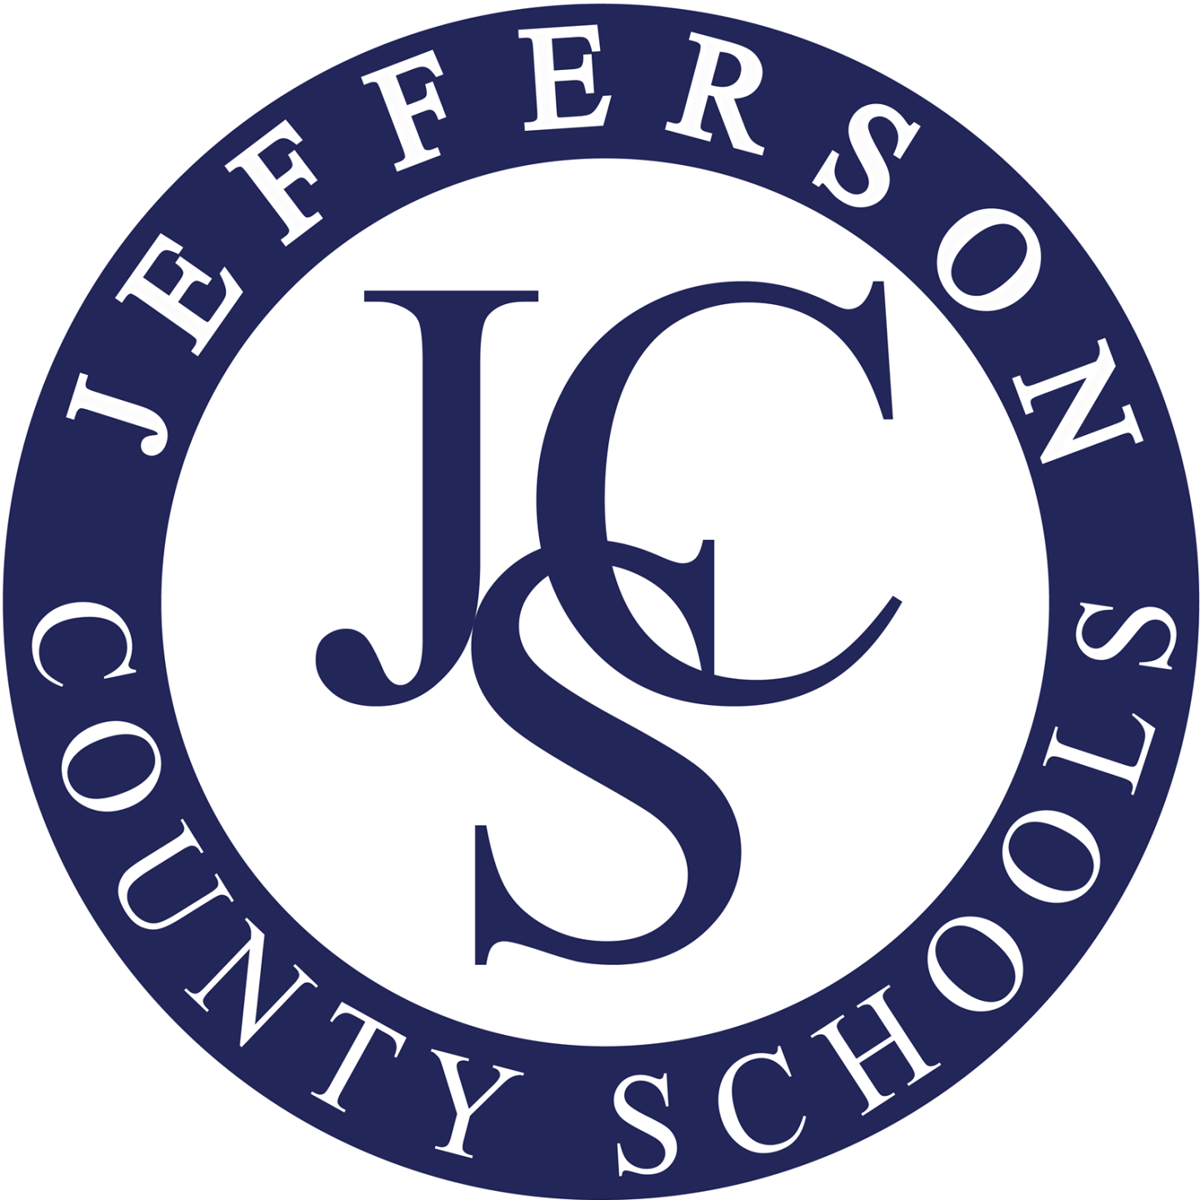 Uc Berkeley 2022 23 Academic Calendar Jefferson Co. Boe Approves 2022-23 School Year Calendar | Journal-News |  Journal-News.net